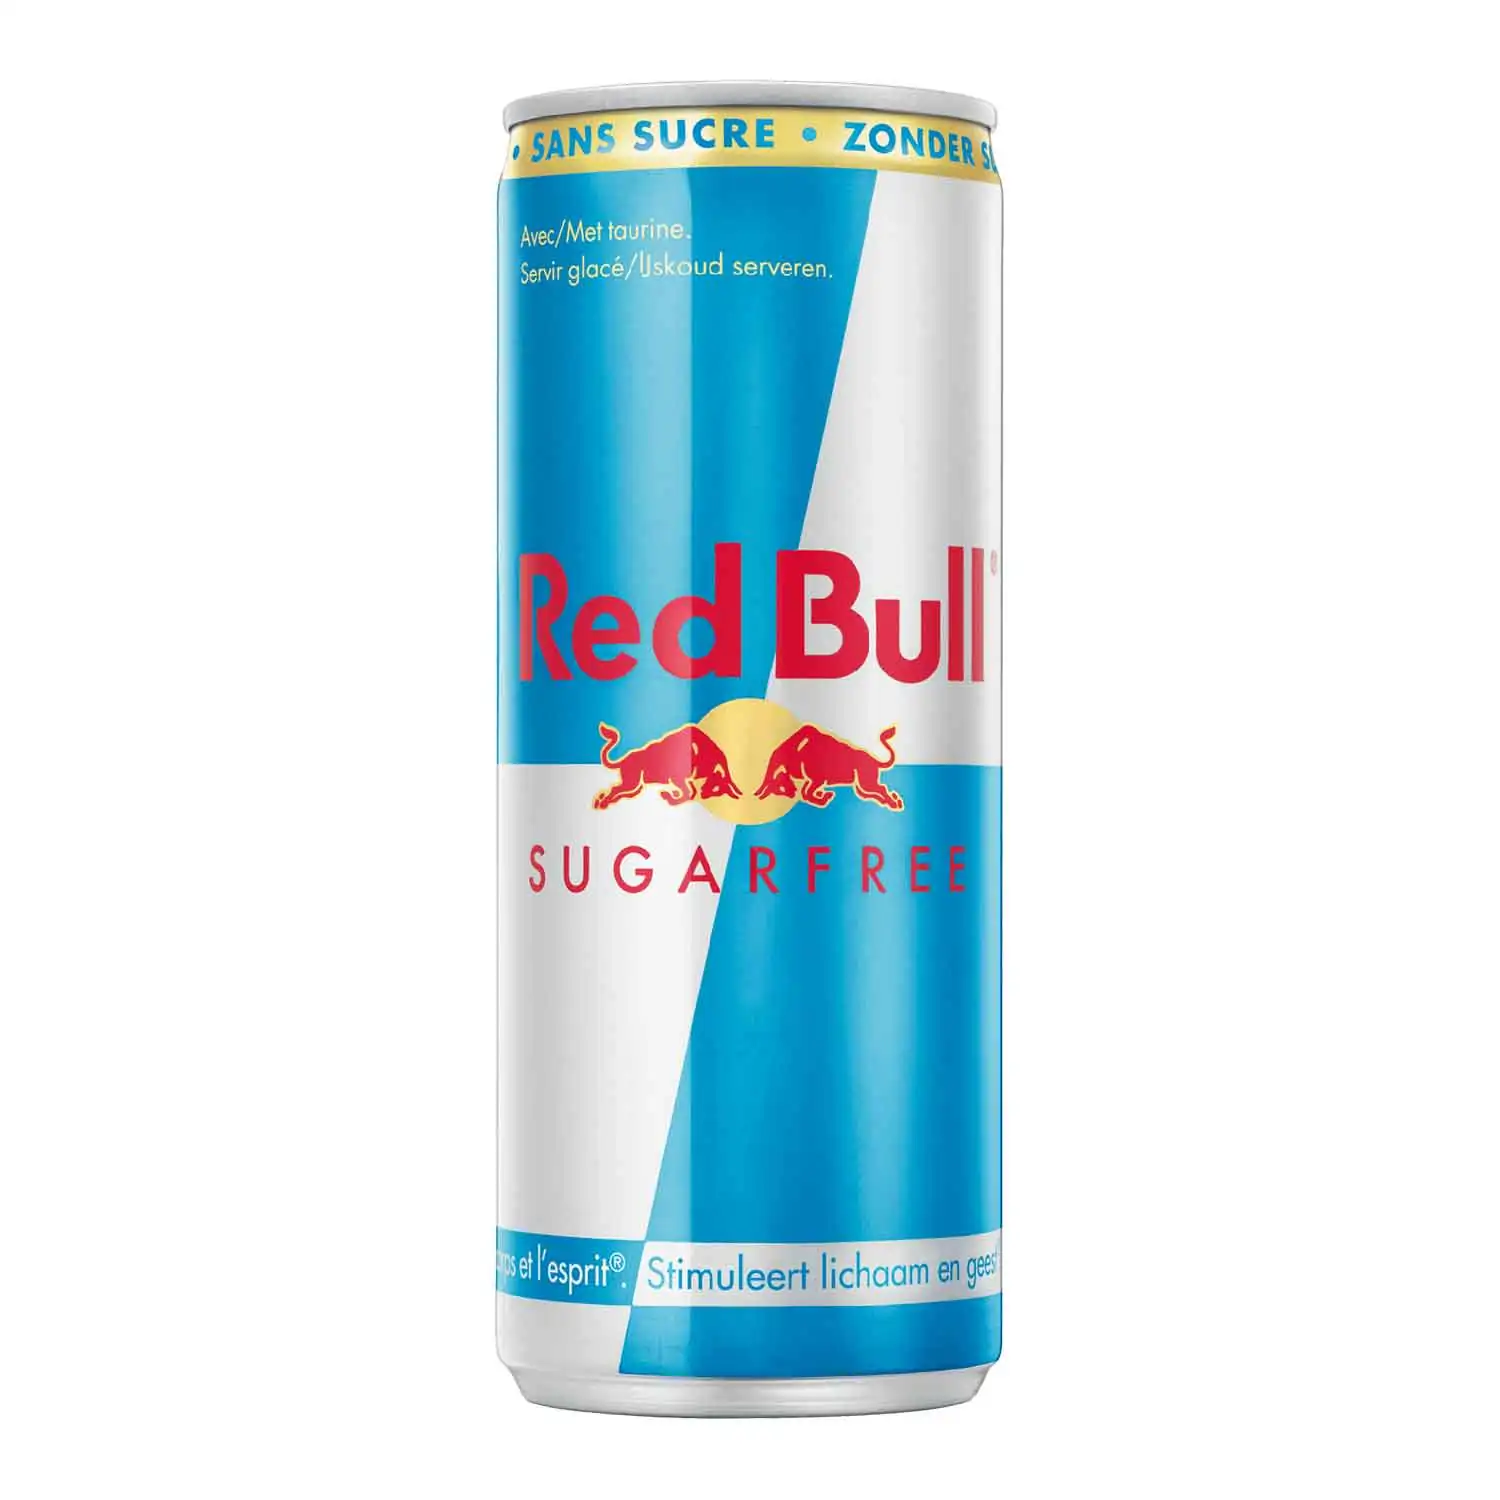 Red Bull sugarfree 35,5cl - Buy at Real Tobacco